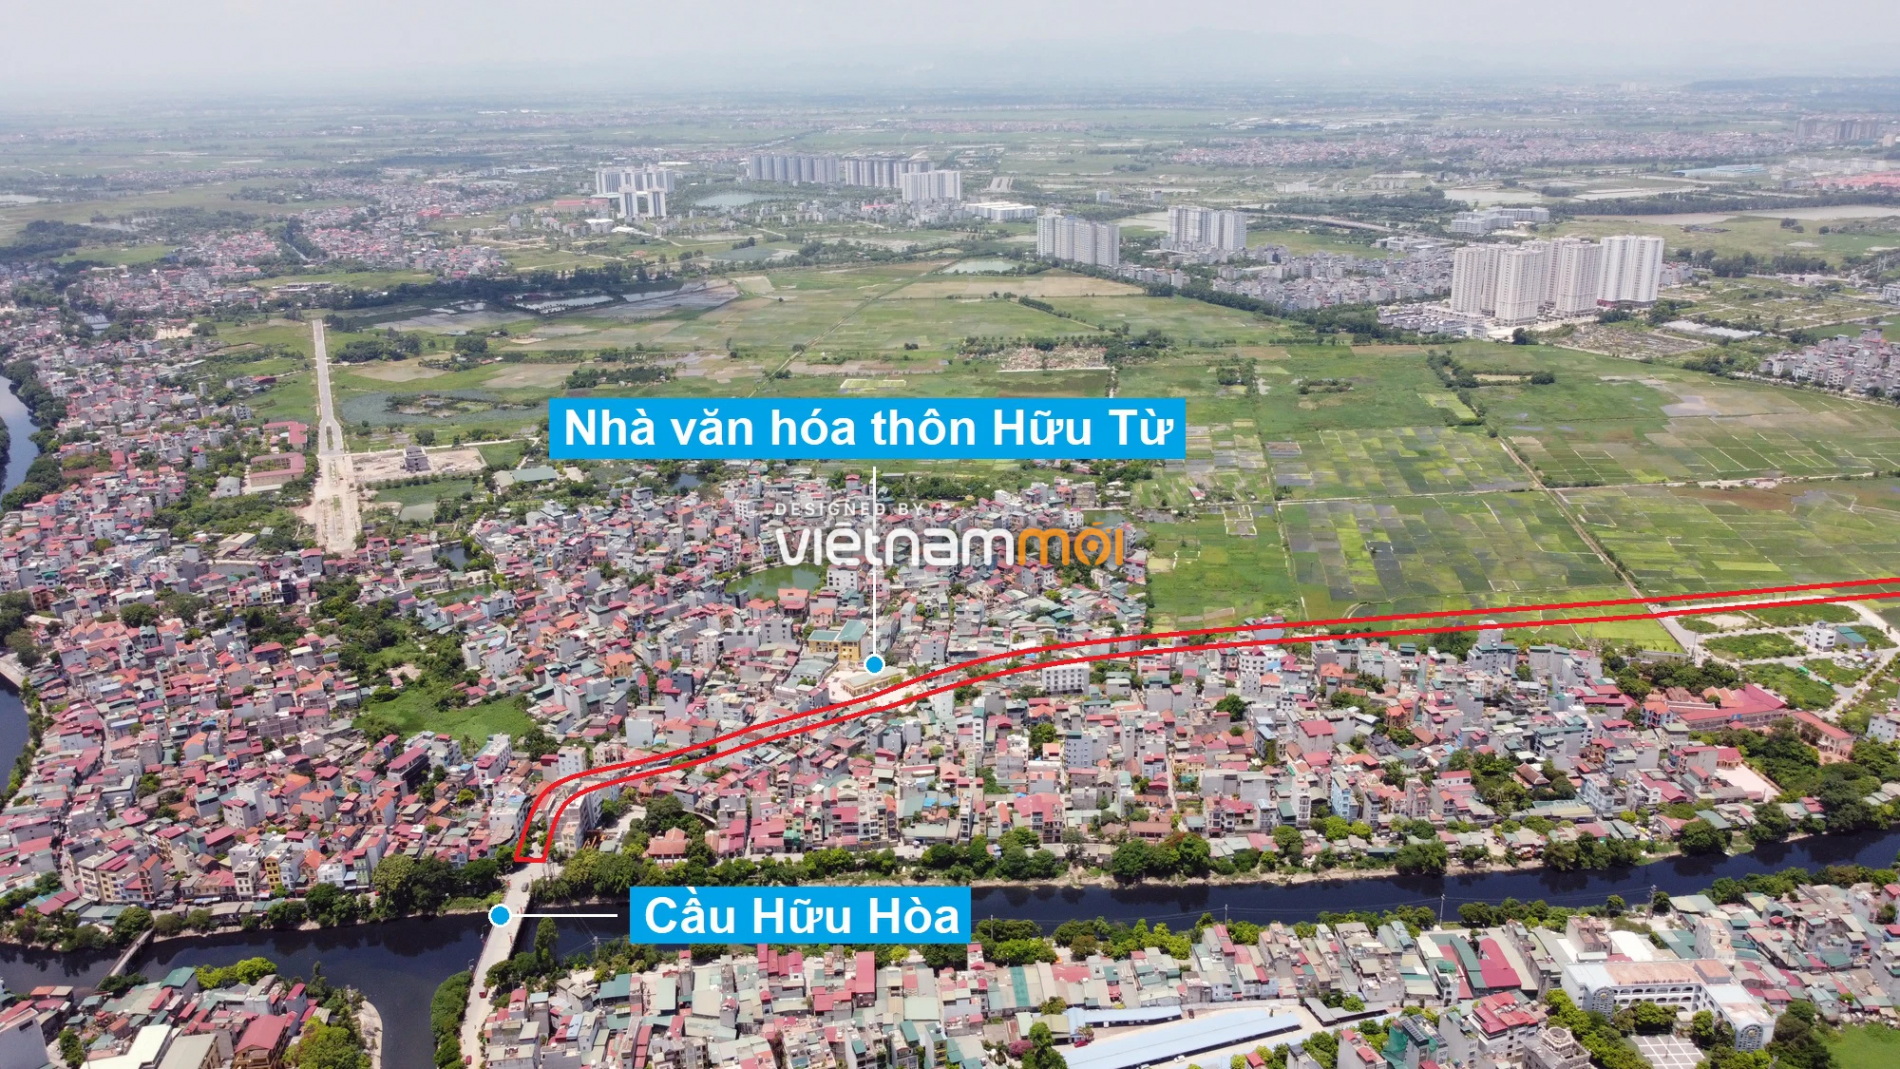 Những khu đất sắp thu hồi để mở đường ở xã Hữu Hòa, Thanh Trì, Hà Nội (phần 2) - Ảnh 7.